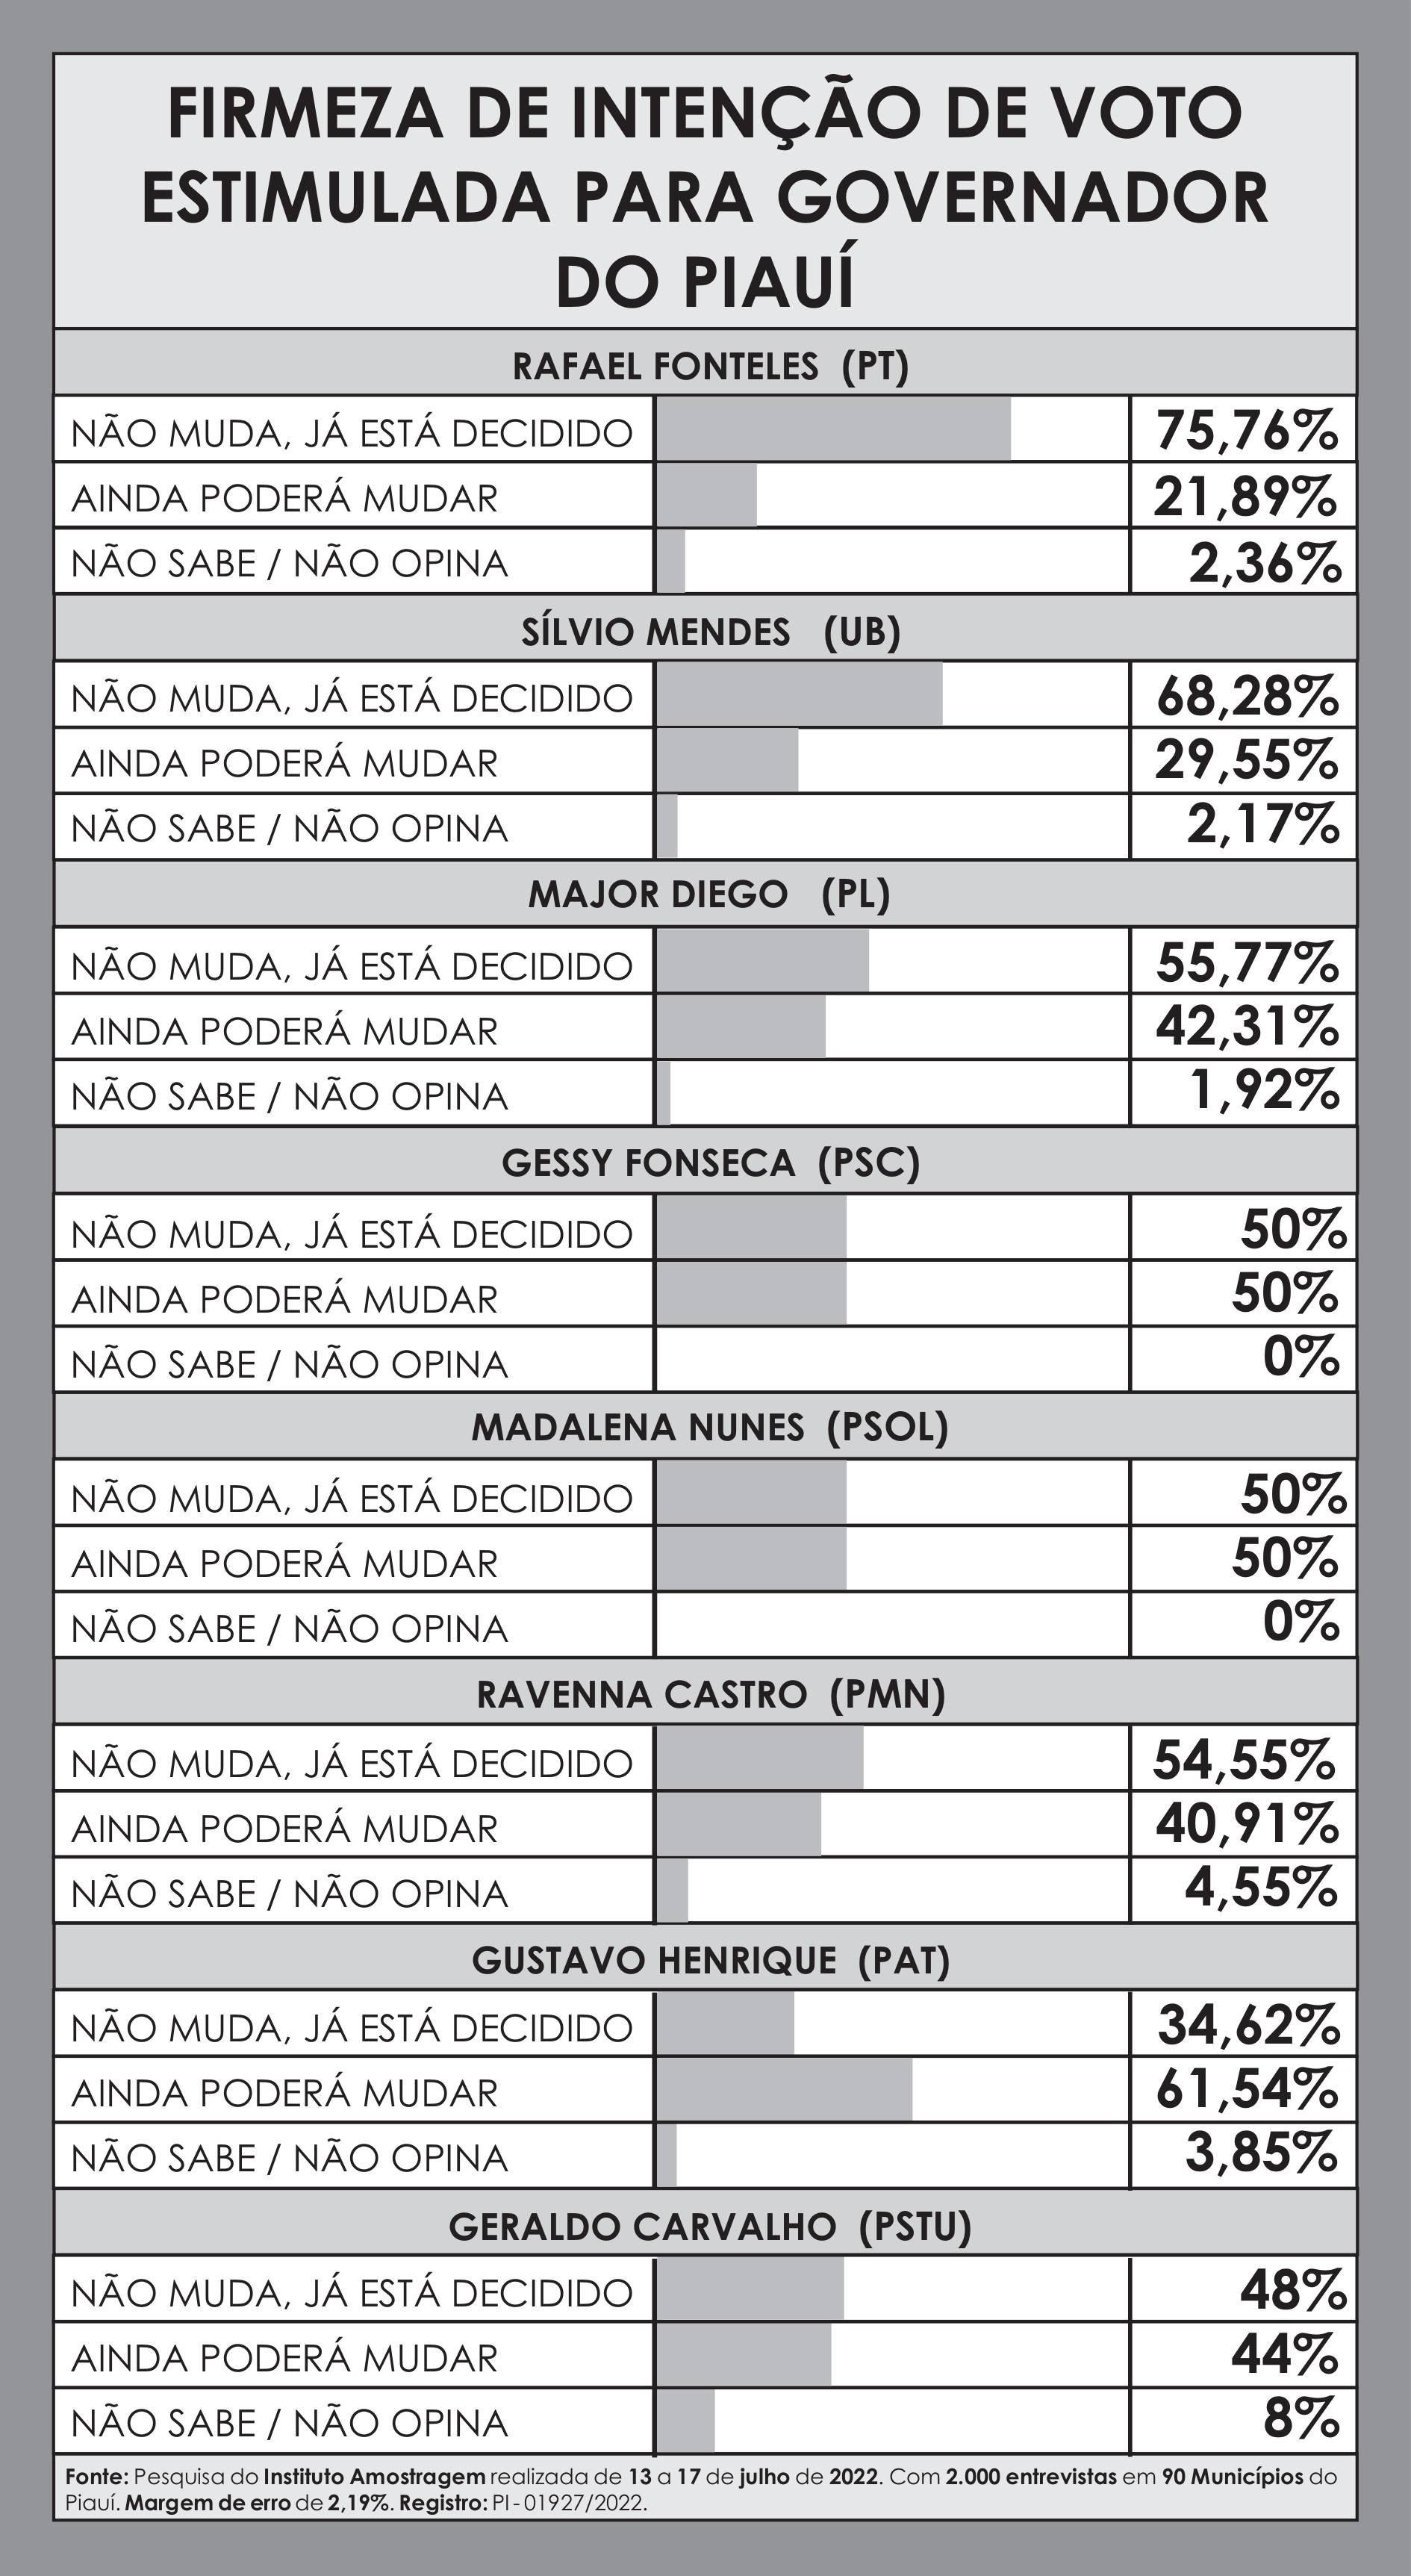 Firmeza de intenção de voto para governador do Piauí (Foto: Divulgação/ Amostragem)